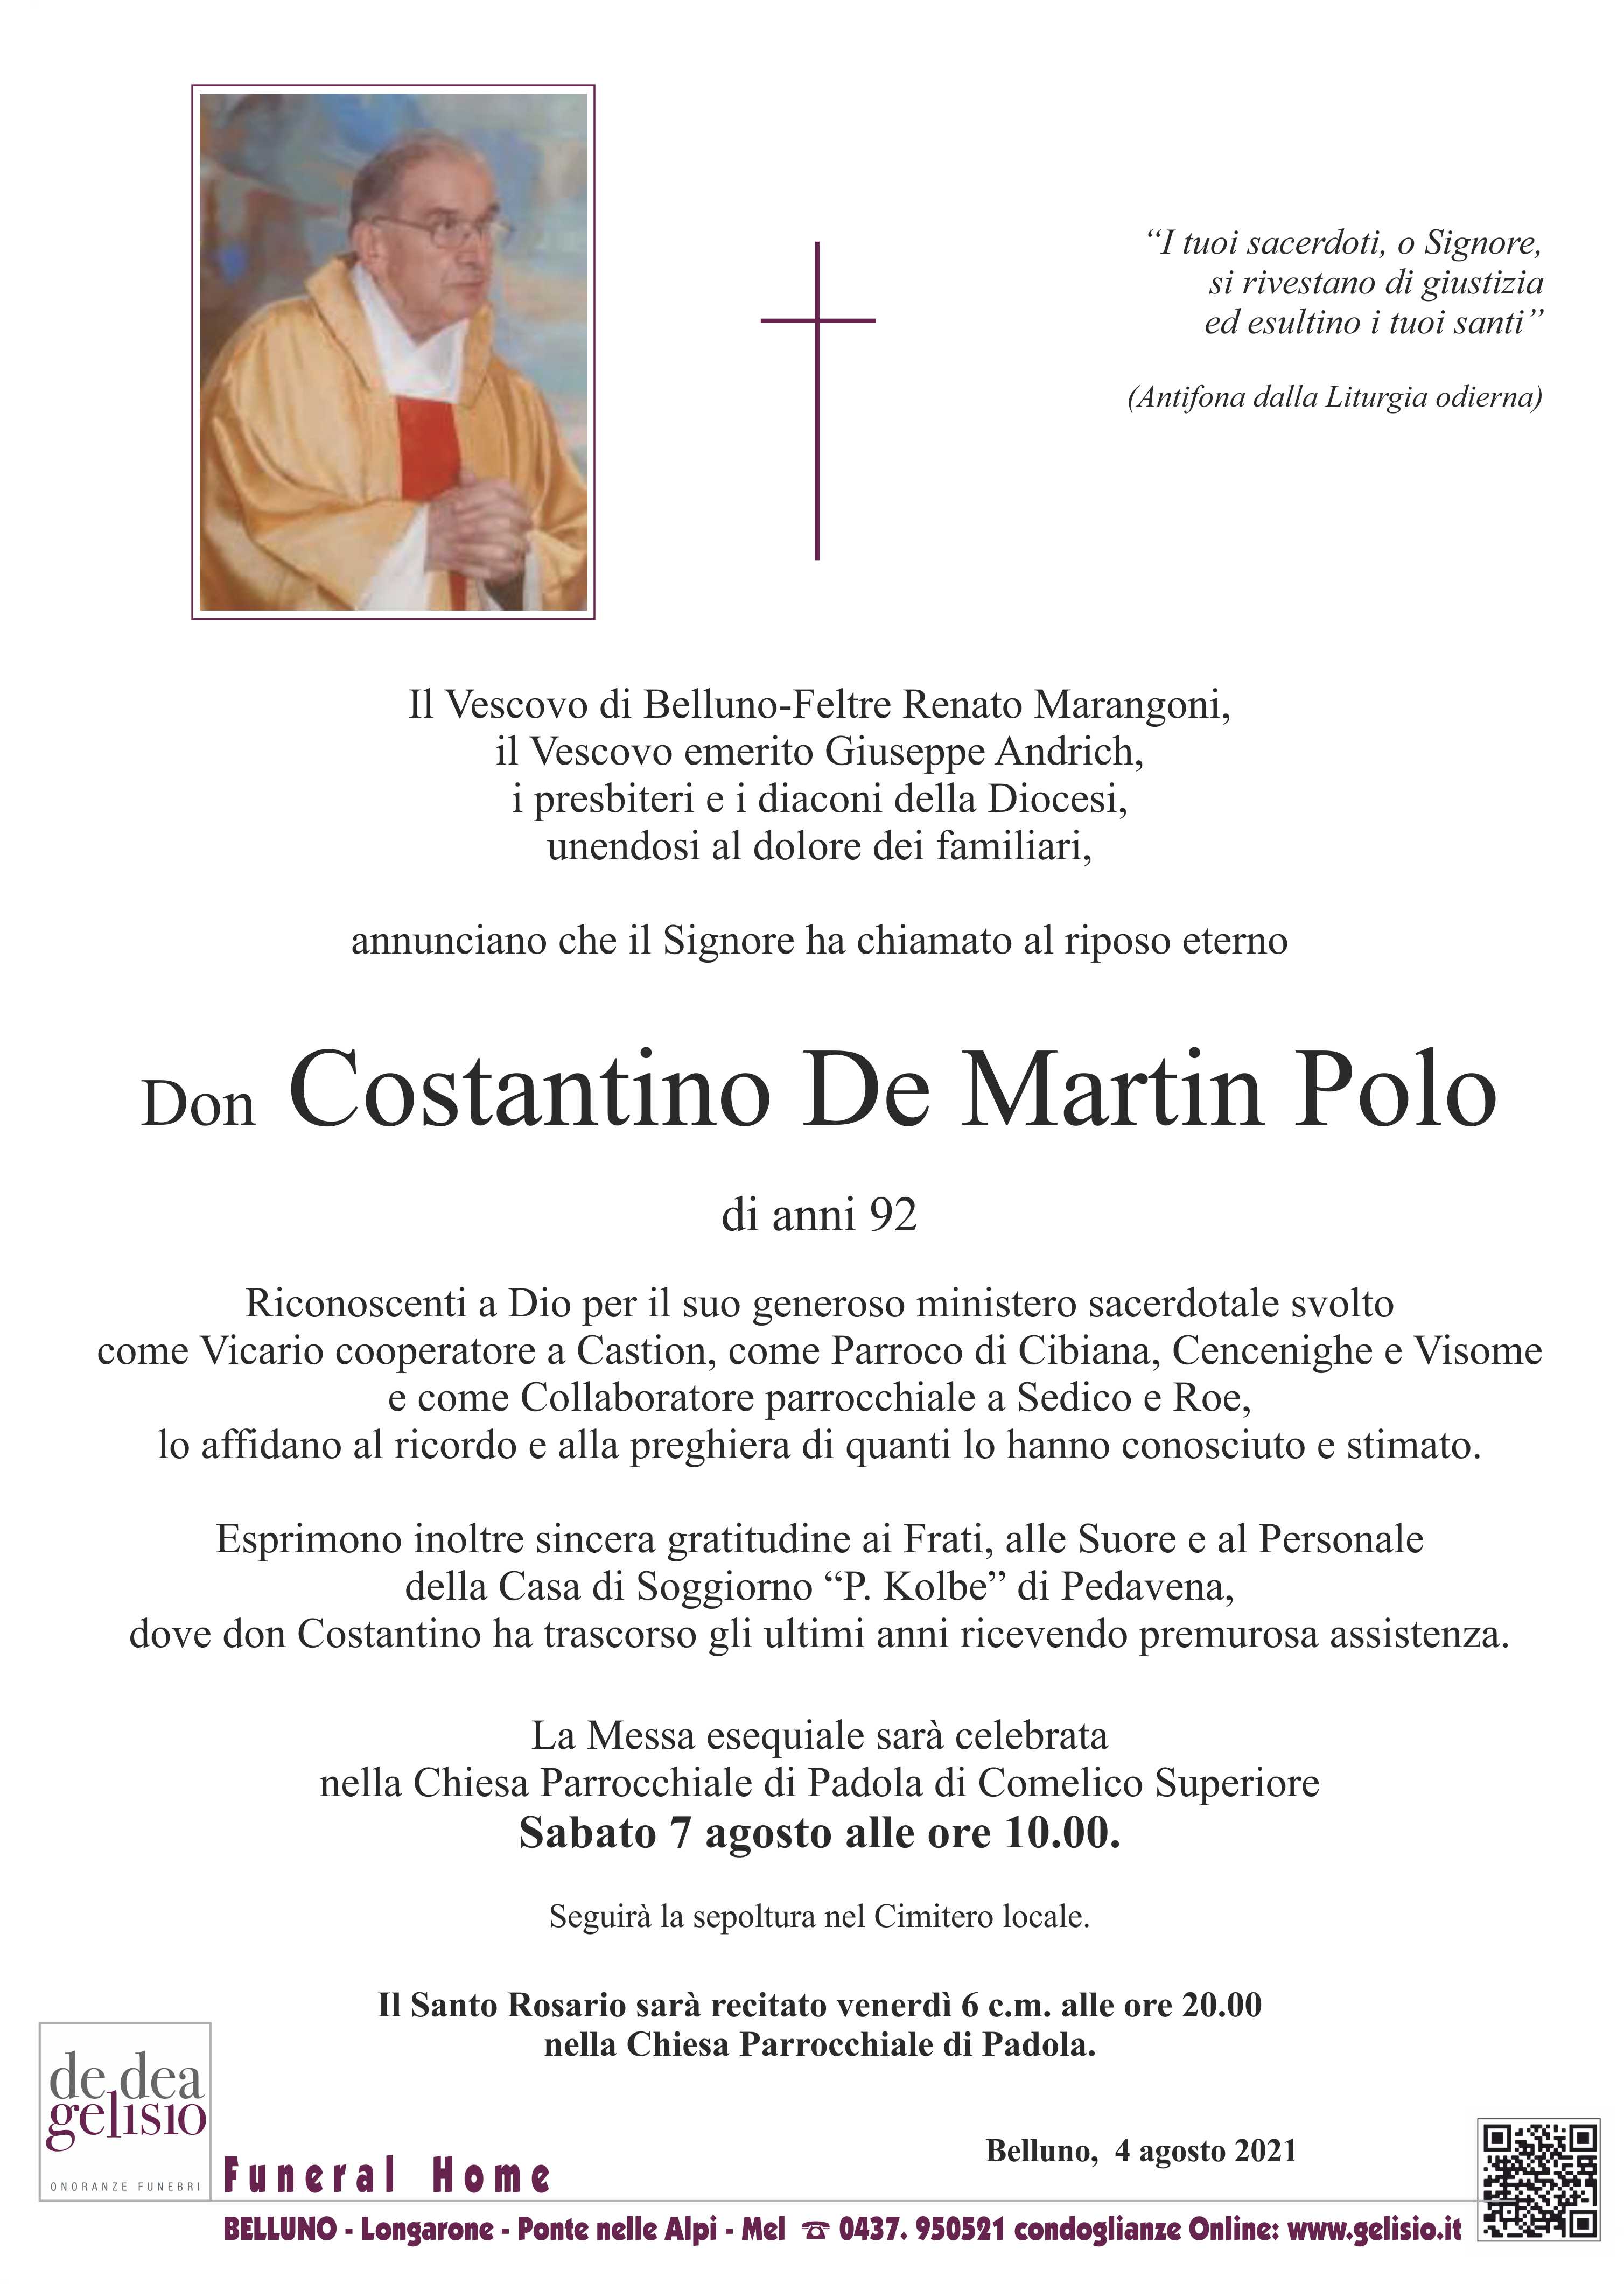 Don Costantino De Martin Polo